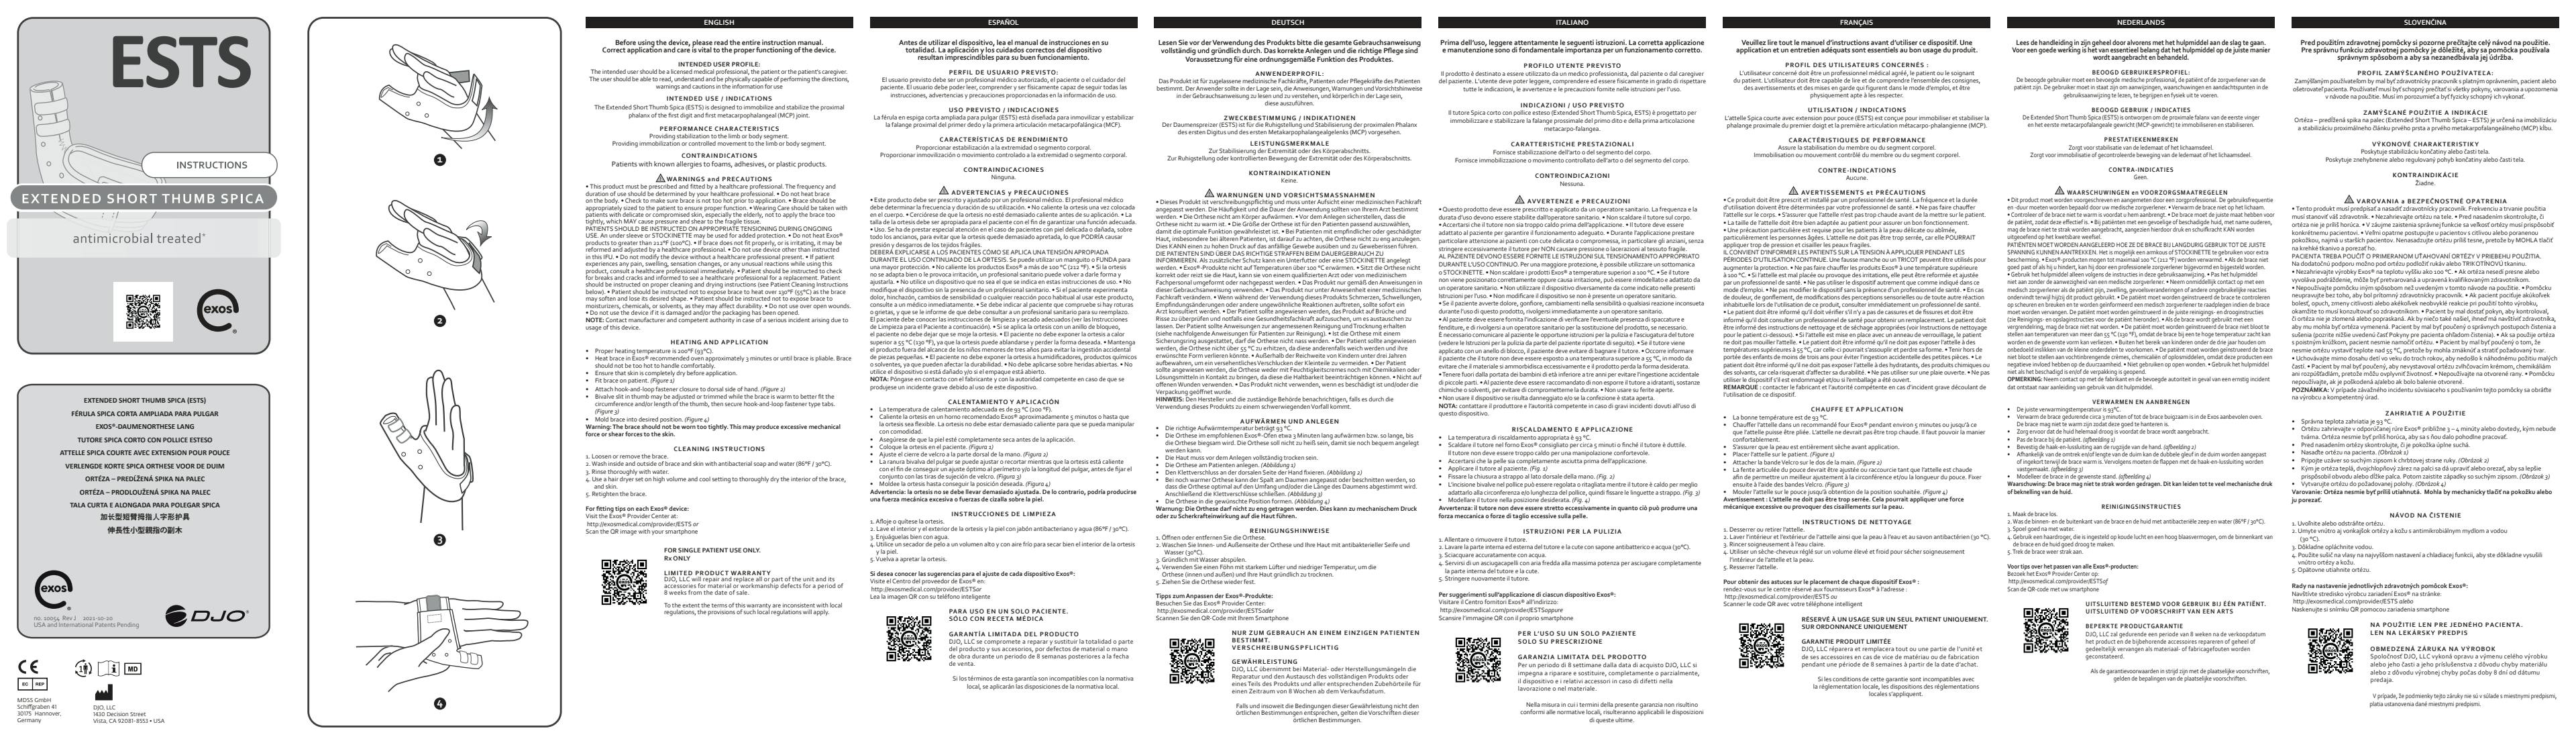 Gebrauchsanleitung_EXOS_Daumenorthese-lang_10054-Rev-J-2021-10-20.pdf